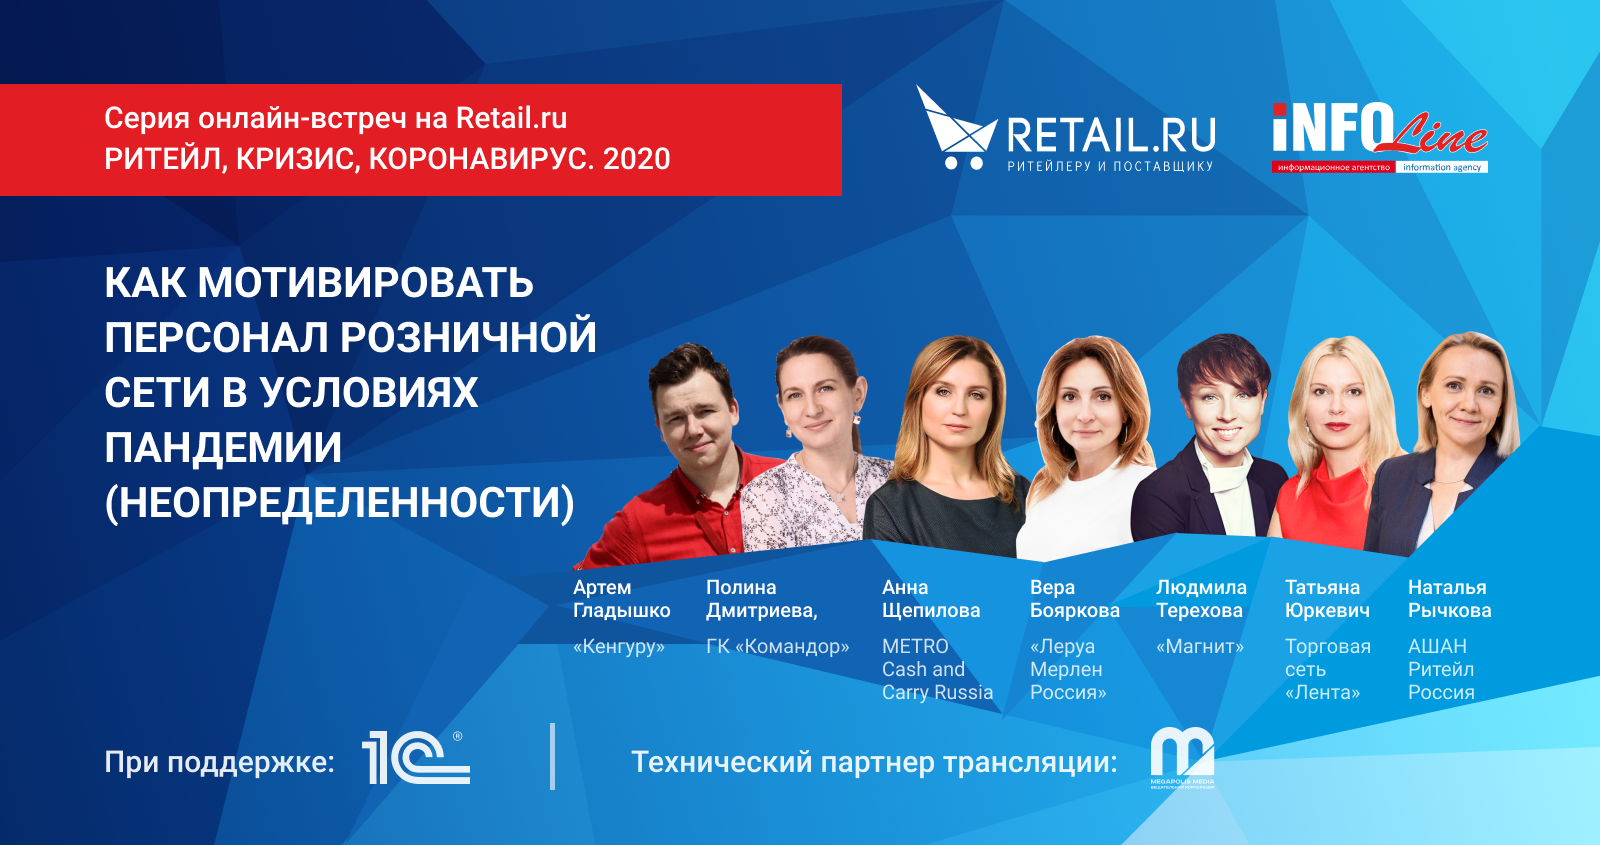 HR и PR-кейсы «Магнит», «Ашан», METRO, «Лента», «Леруа Мерлен» и других сетей на онлайн-встрече Retail.ru